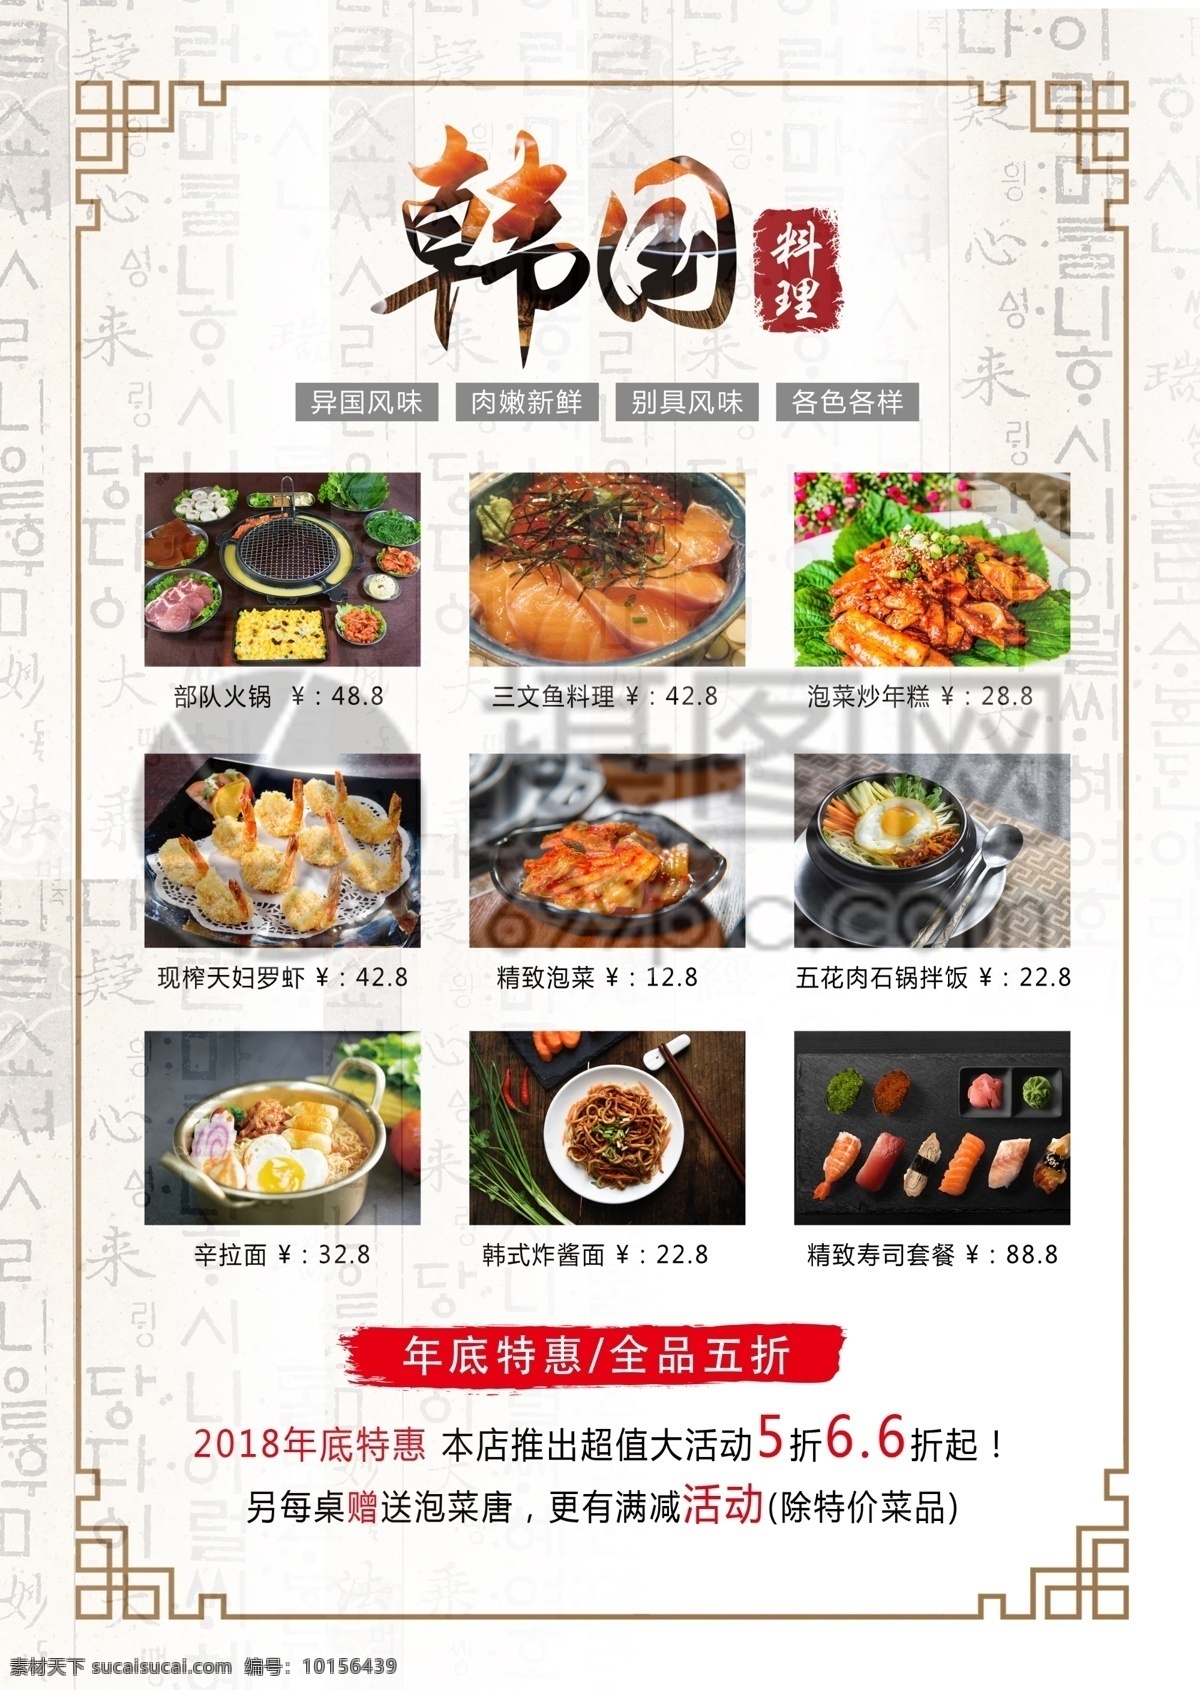 韩国 料理 促销 宣传单 美食 美味 韩国料理 烤肉 部队火锅 寿司 促销宣传 宣传单设计 简约 简洁 大气 活力